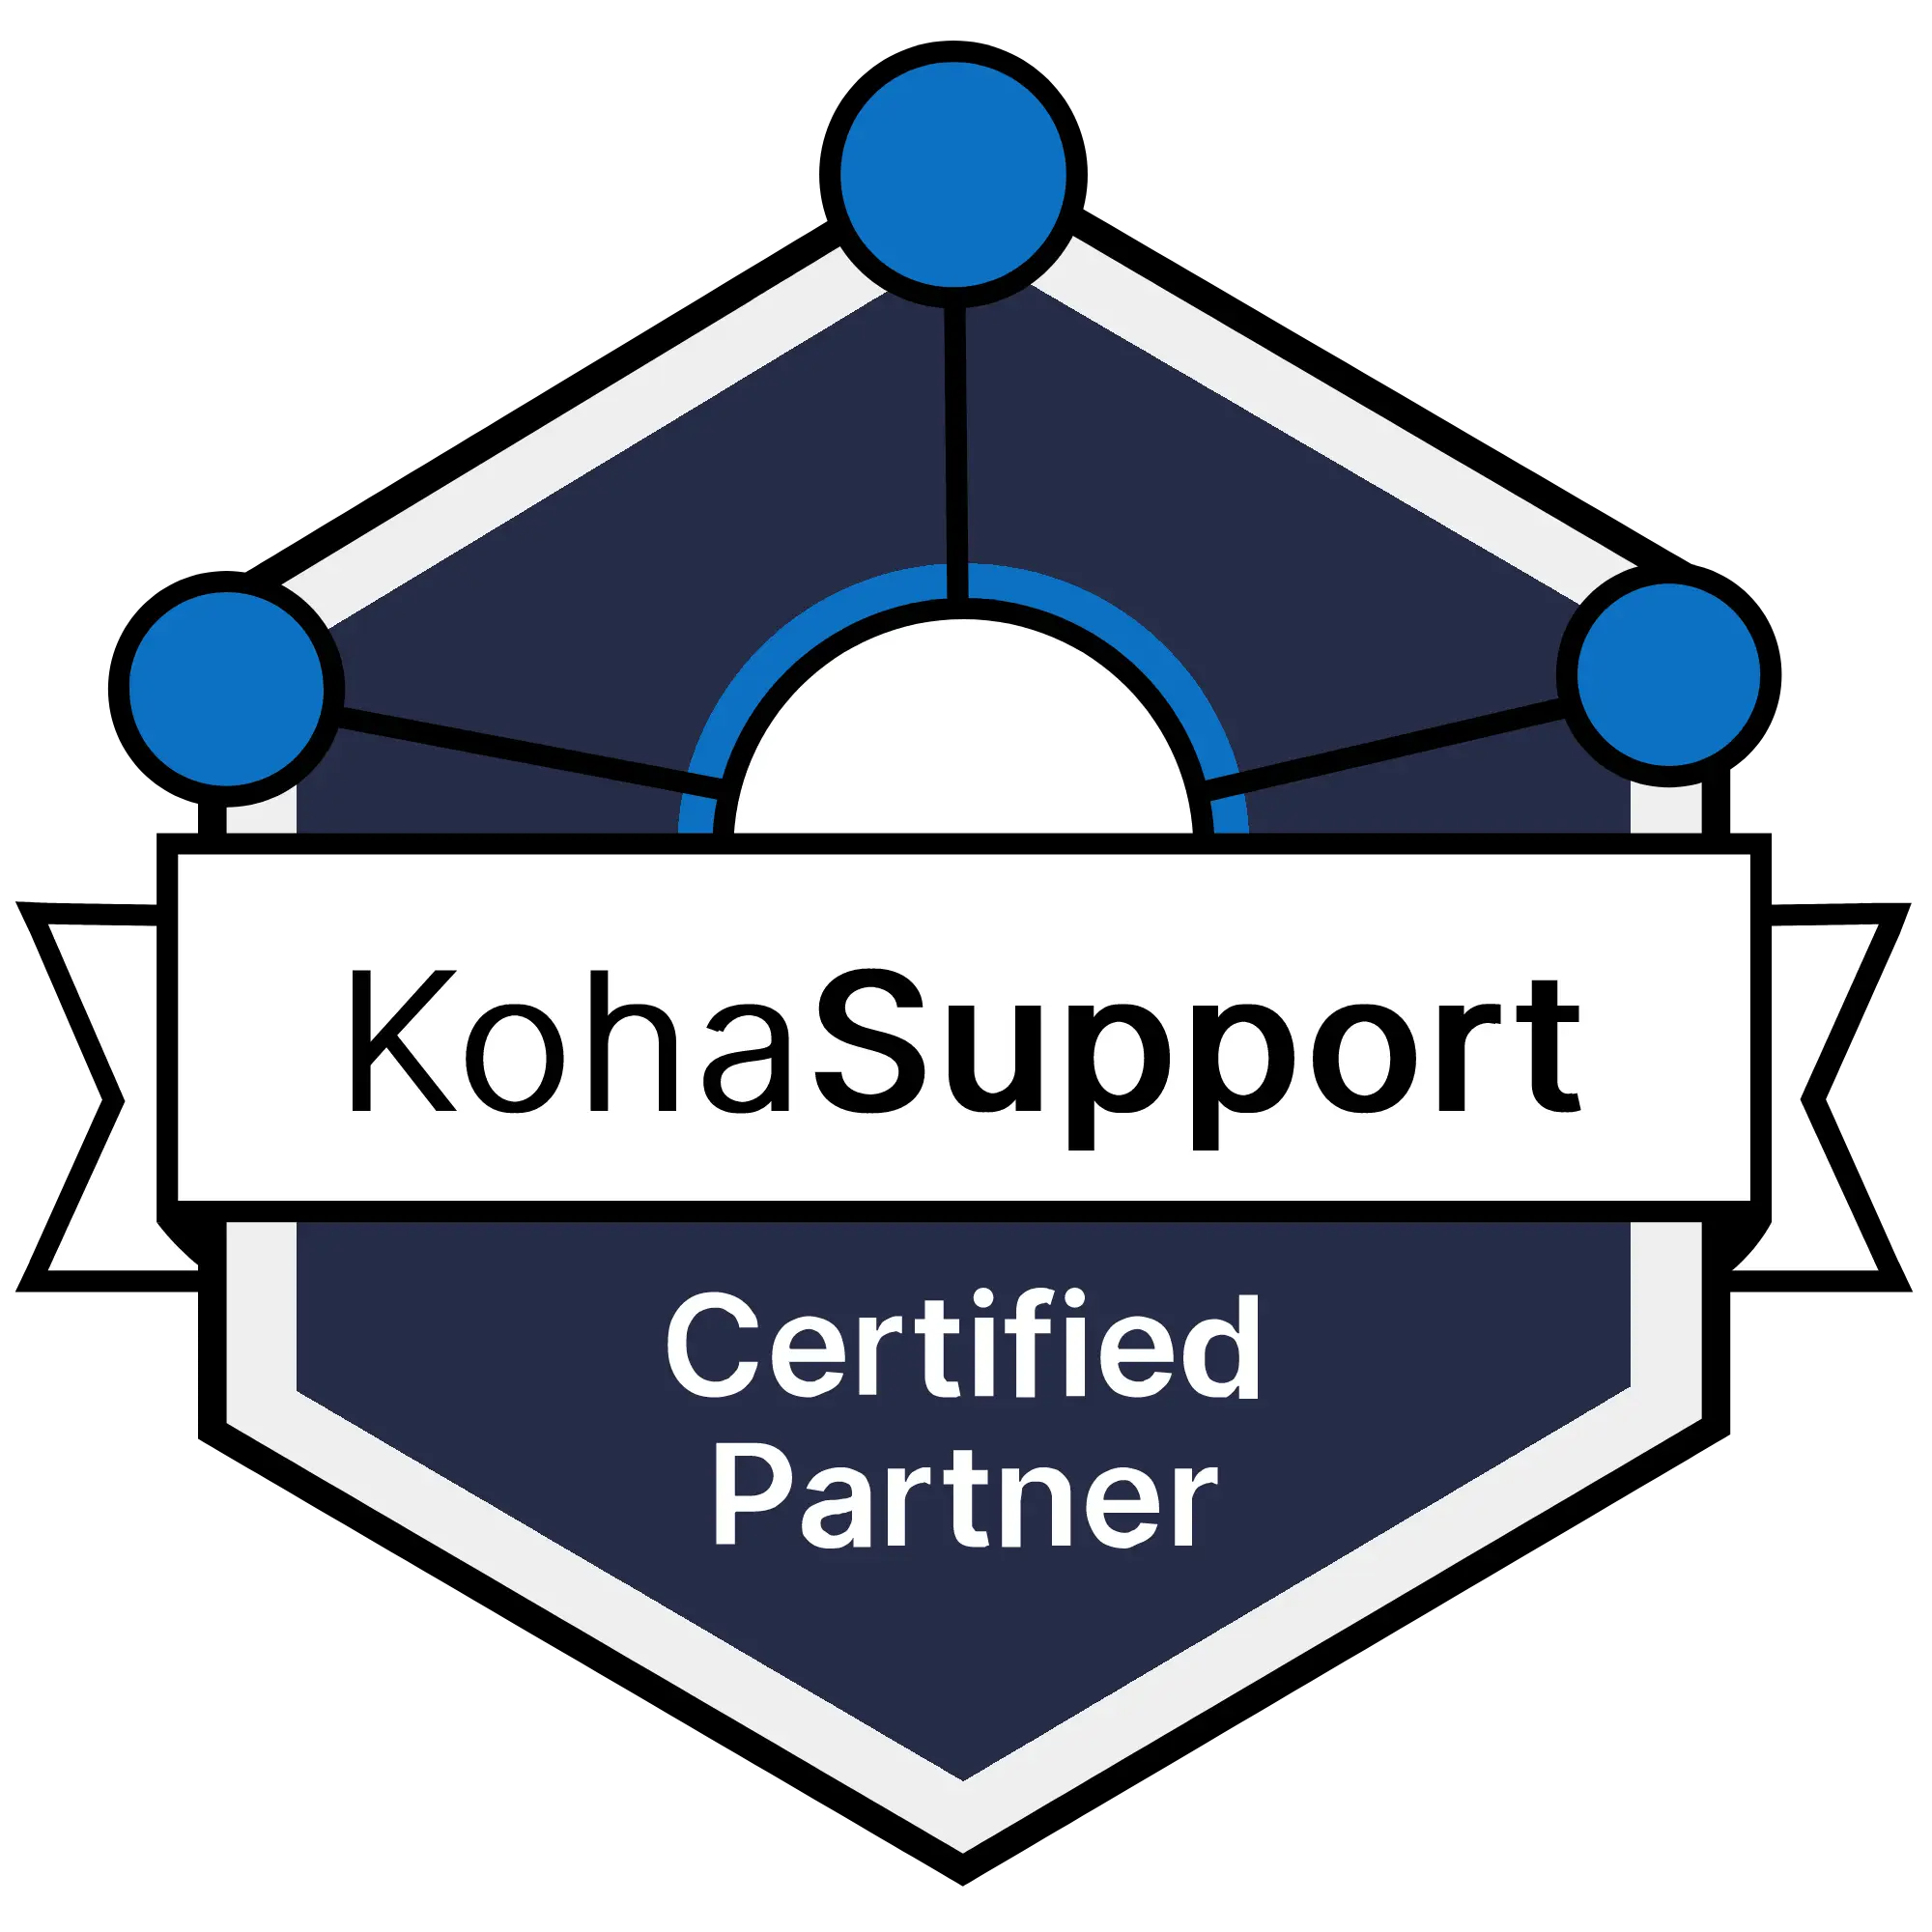 KohaSupport Certified Partner Program